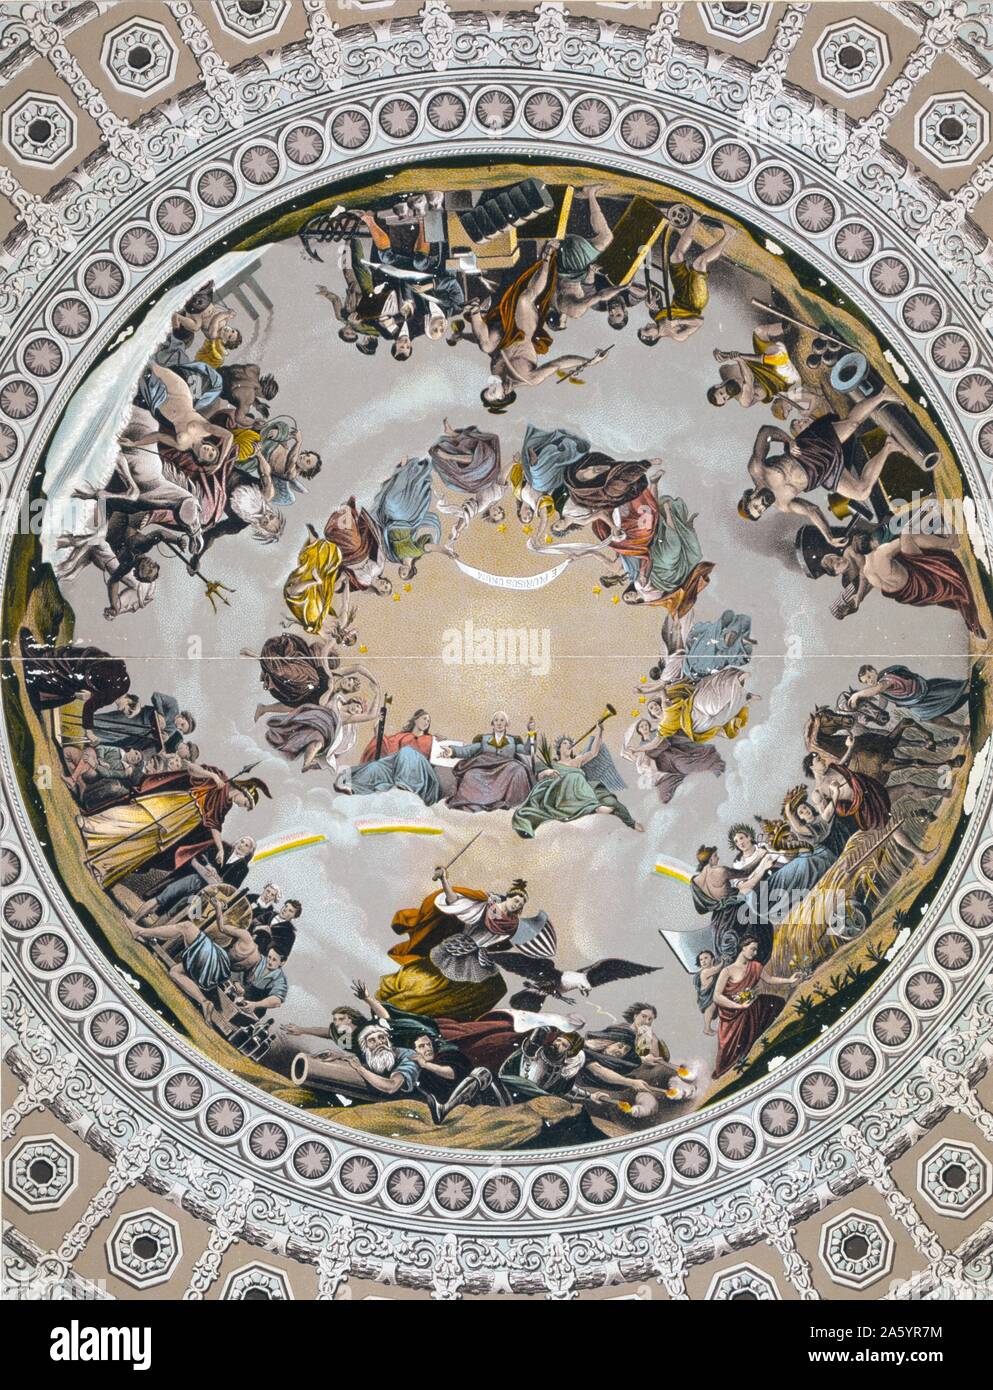 Photolithograph des Freskos "Apotheosis of Washington", in der Kuppel des US Capitol Building. Von Constantino Brumidi (1805-1880) Italienisch-amerikanischer Historienmaler. Datiert 1890 Stockfoto